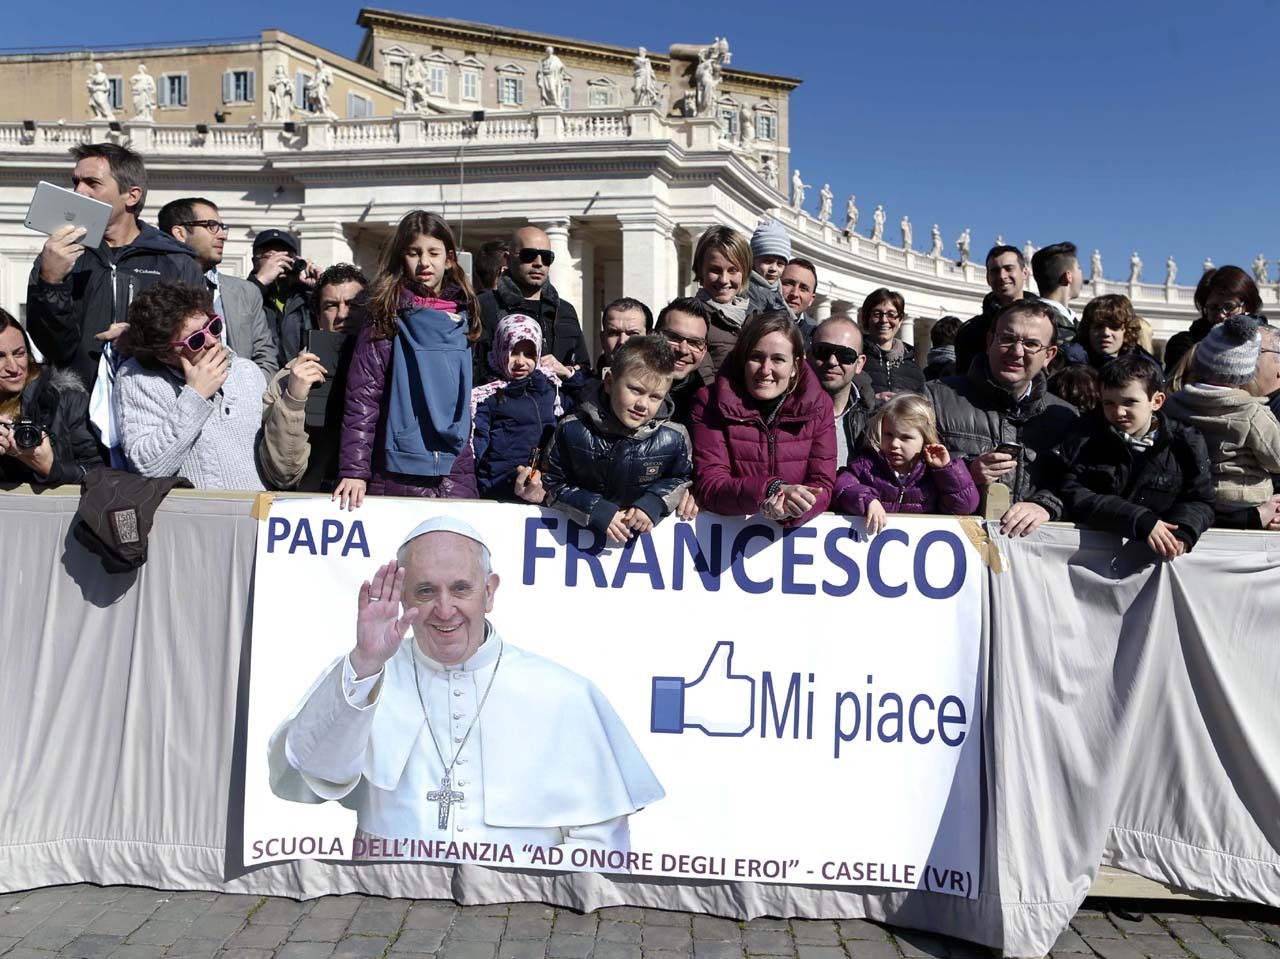 Francisco, candidato al Nobel de la Paz. El argentino Bergoglio integra una lista de 278 nombres elegidos para disputarse el premio. (Reuters)